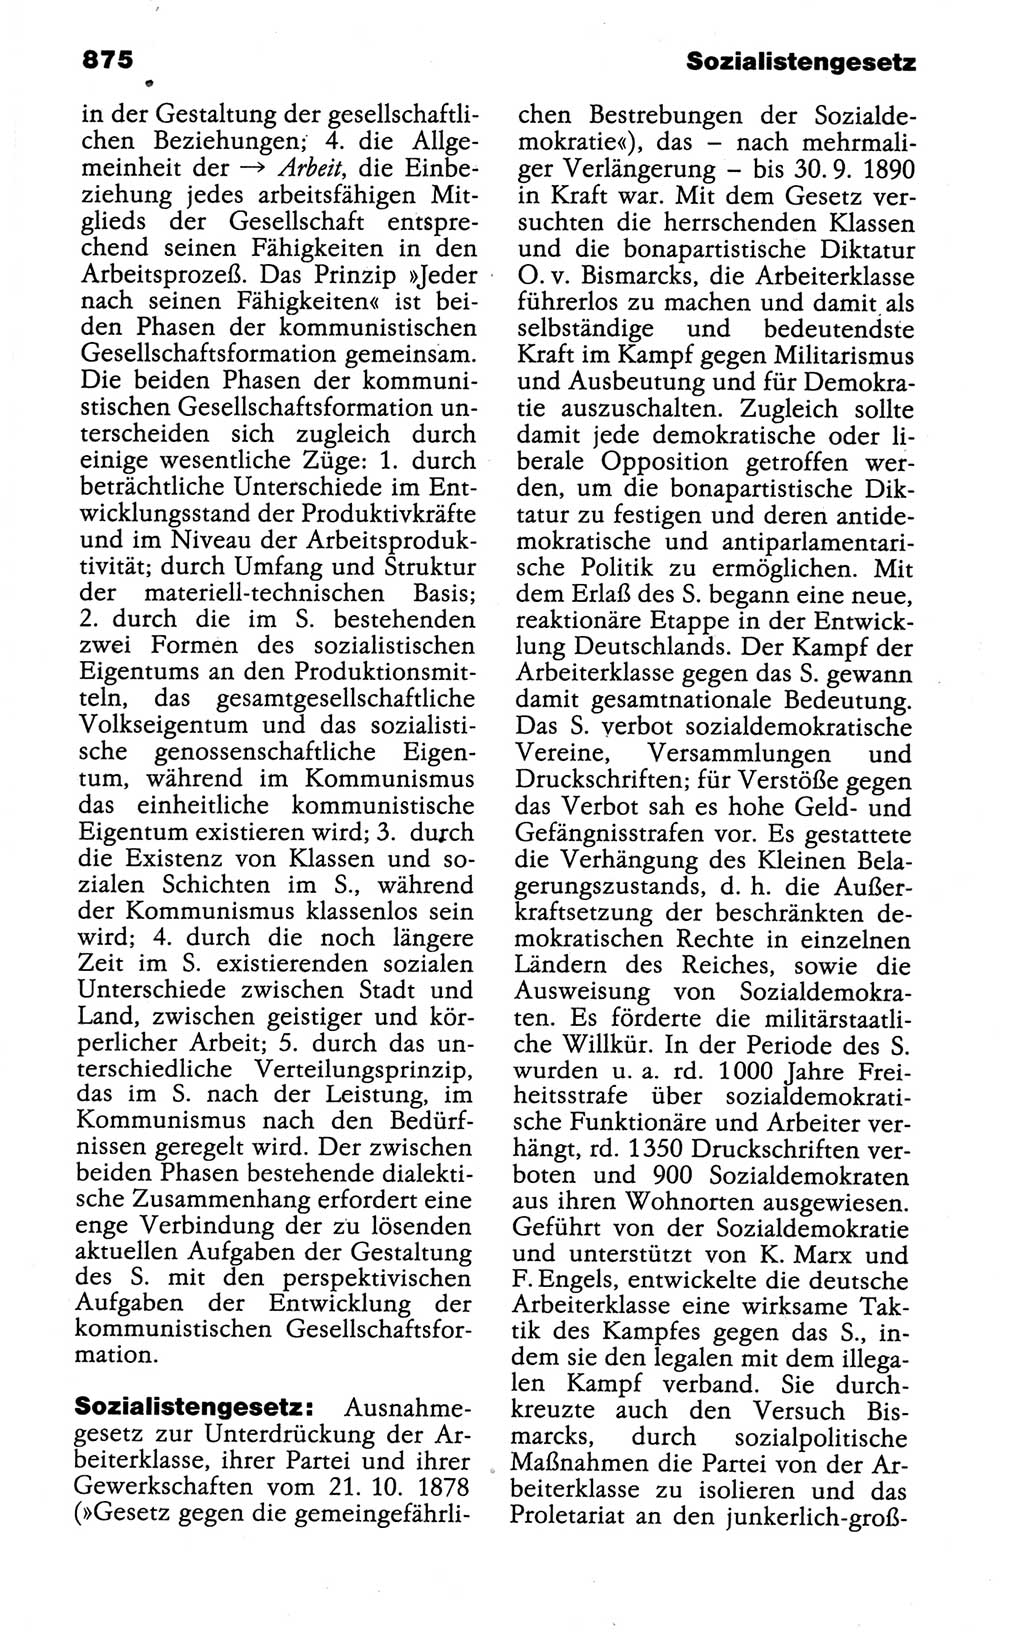 Kleines politisches Wörterbuch [Deutsche Demokratische Republik (DDR)] 1988, Seite 875 (Kl. pol. Wb. DDR 1988, S. 875)